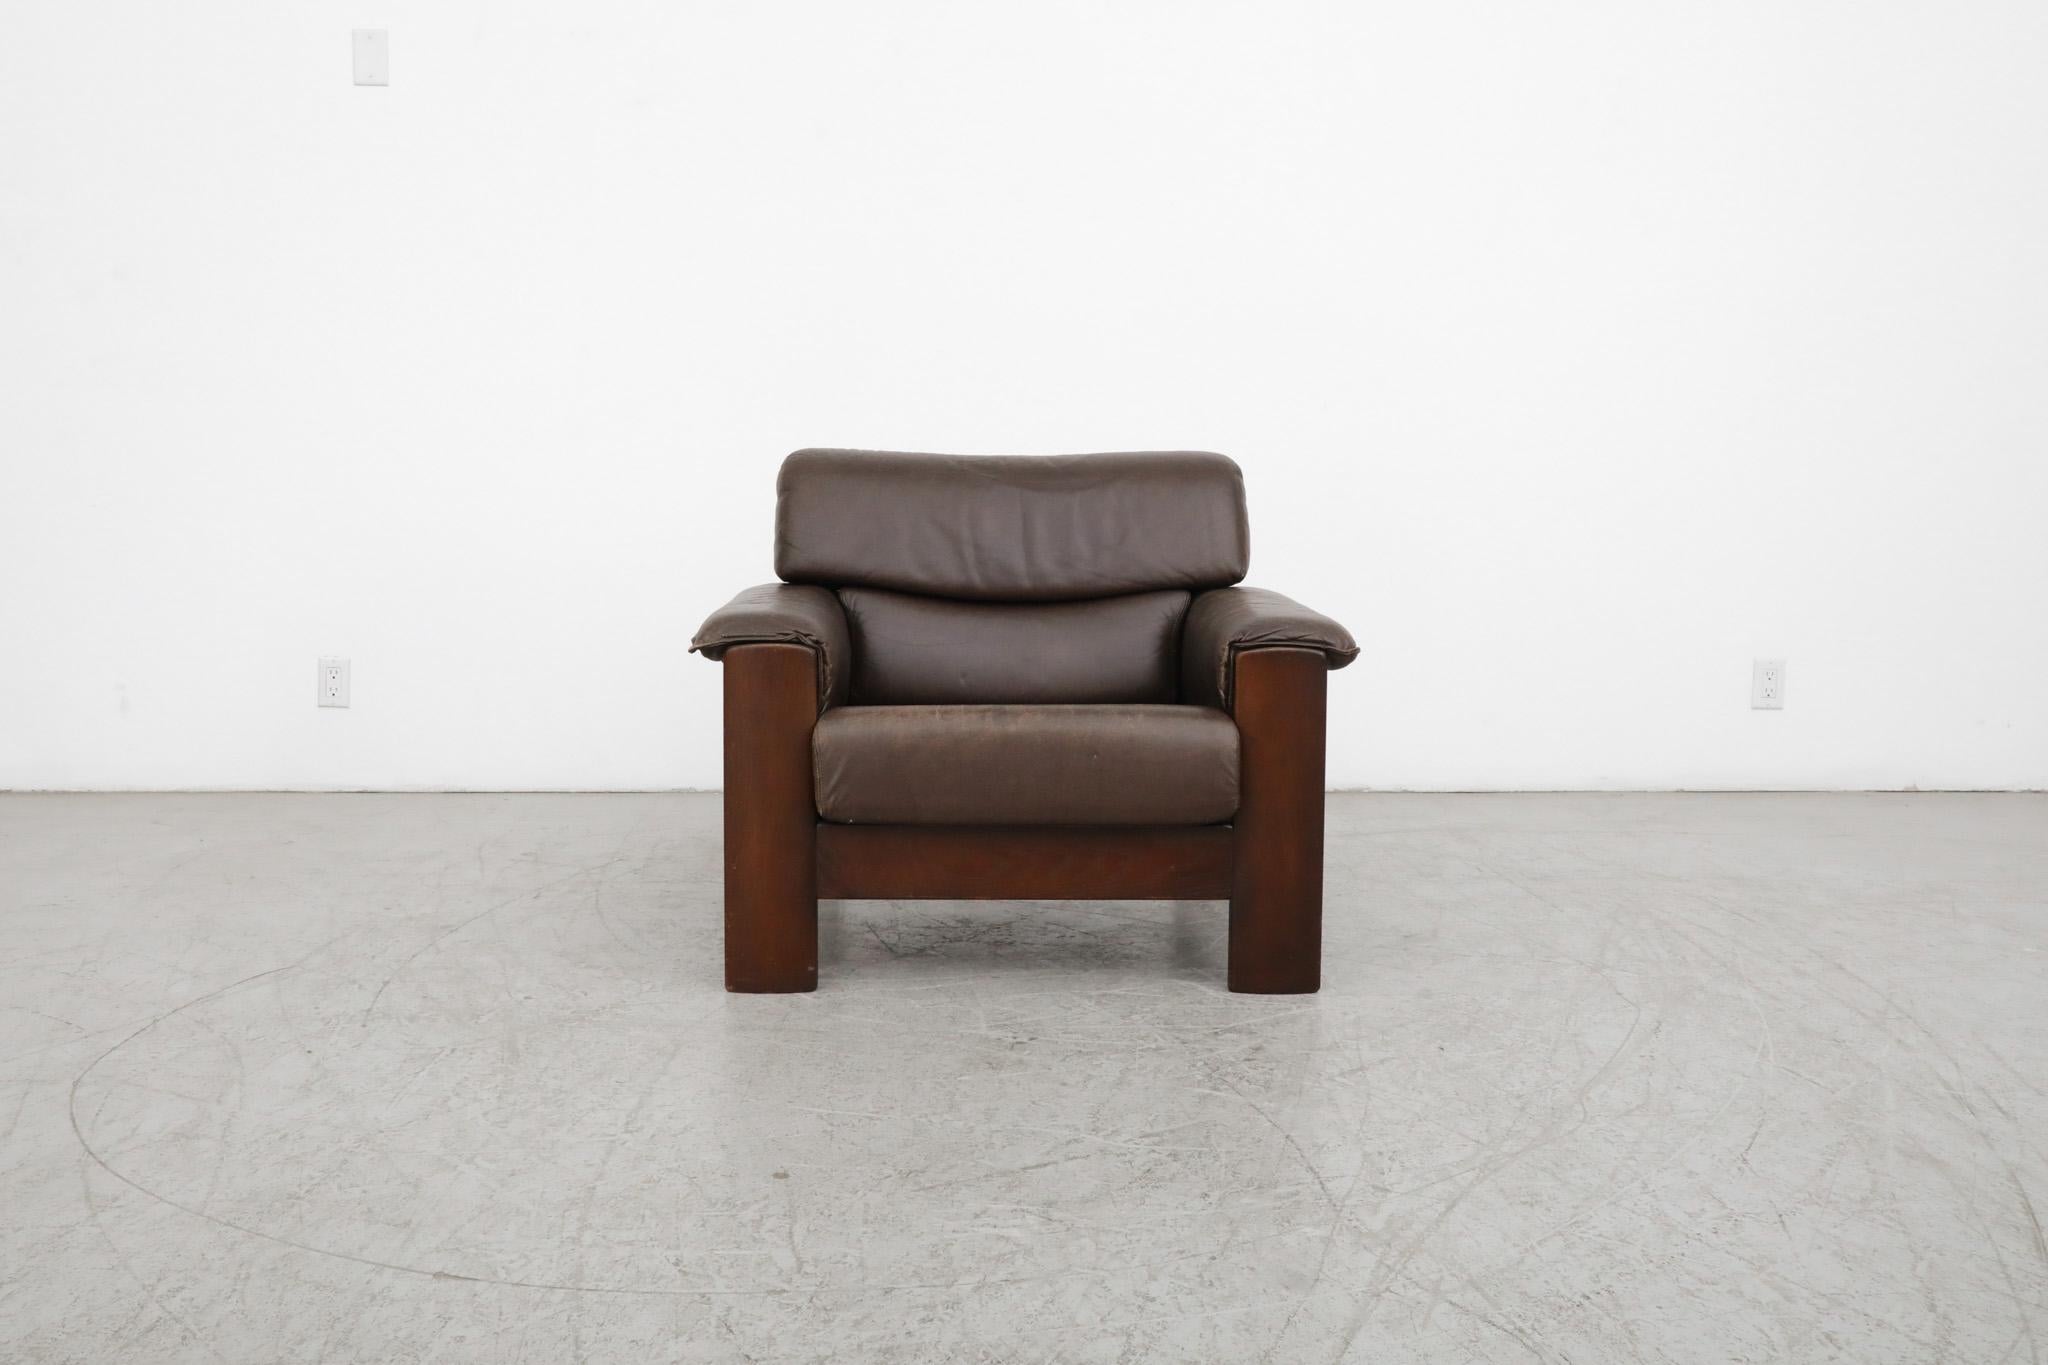 Magnifique fauteuil de salon Leolux du milieu du siècle, avec un cadre en bois de chêne teinté foncé et un cuir brun foncé chaleureux. Design classique avec de généreux accoudoirs en cuir et un support de lattes en bois. En état d'origine avec une